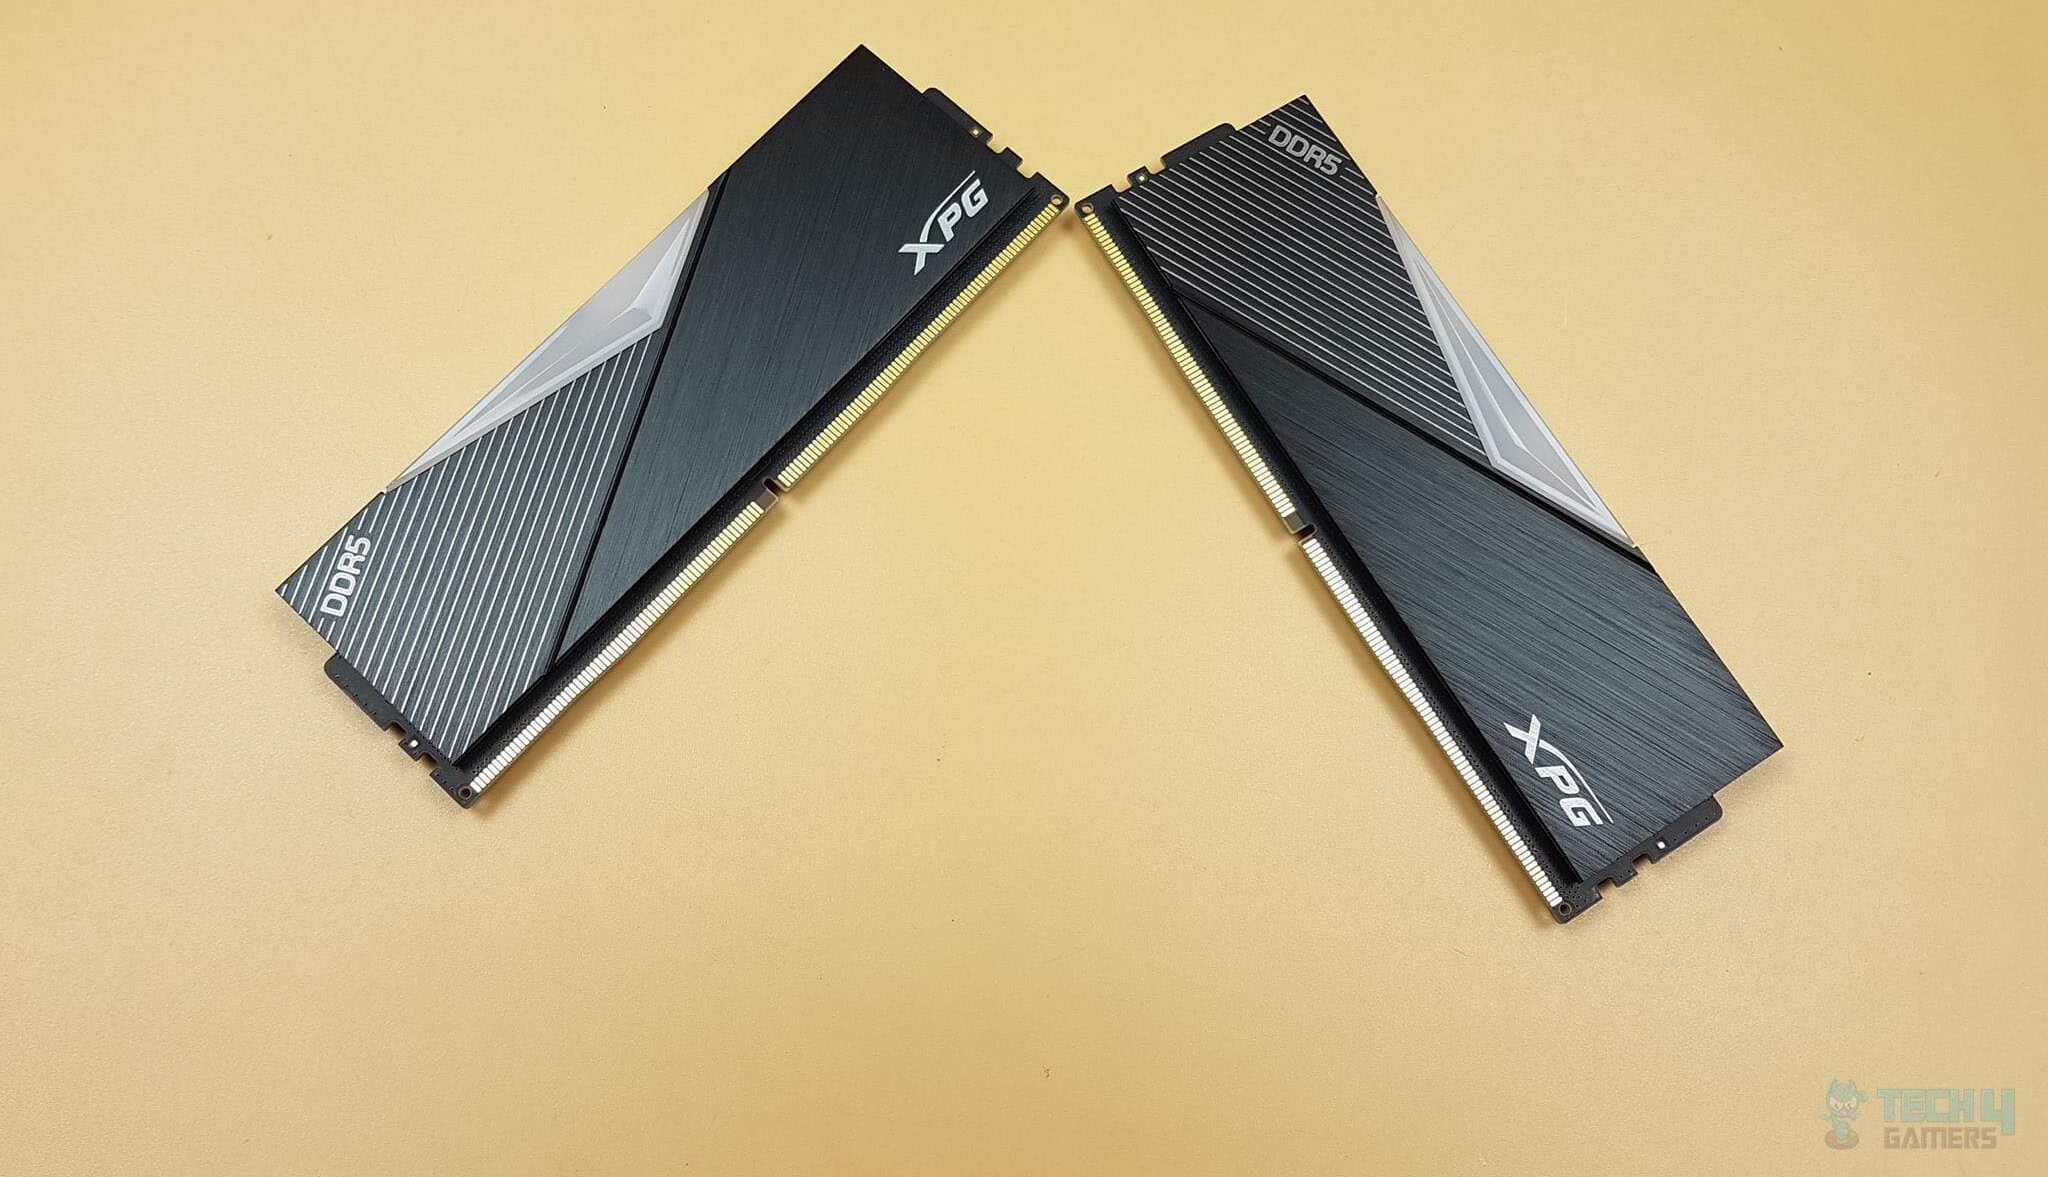 Two XPG Lancer RAM Sticks Being Showcased